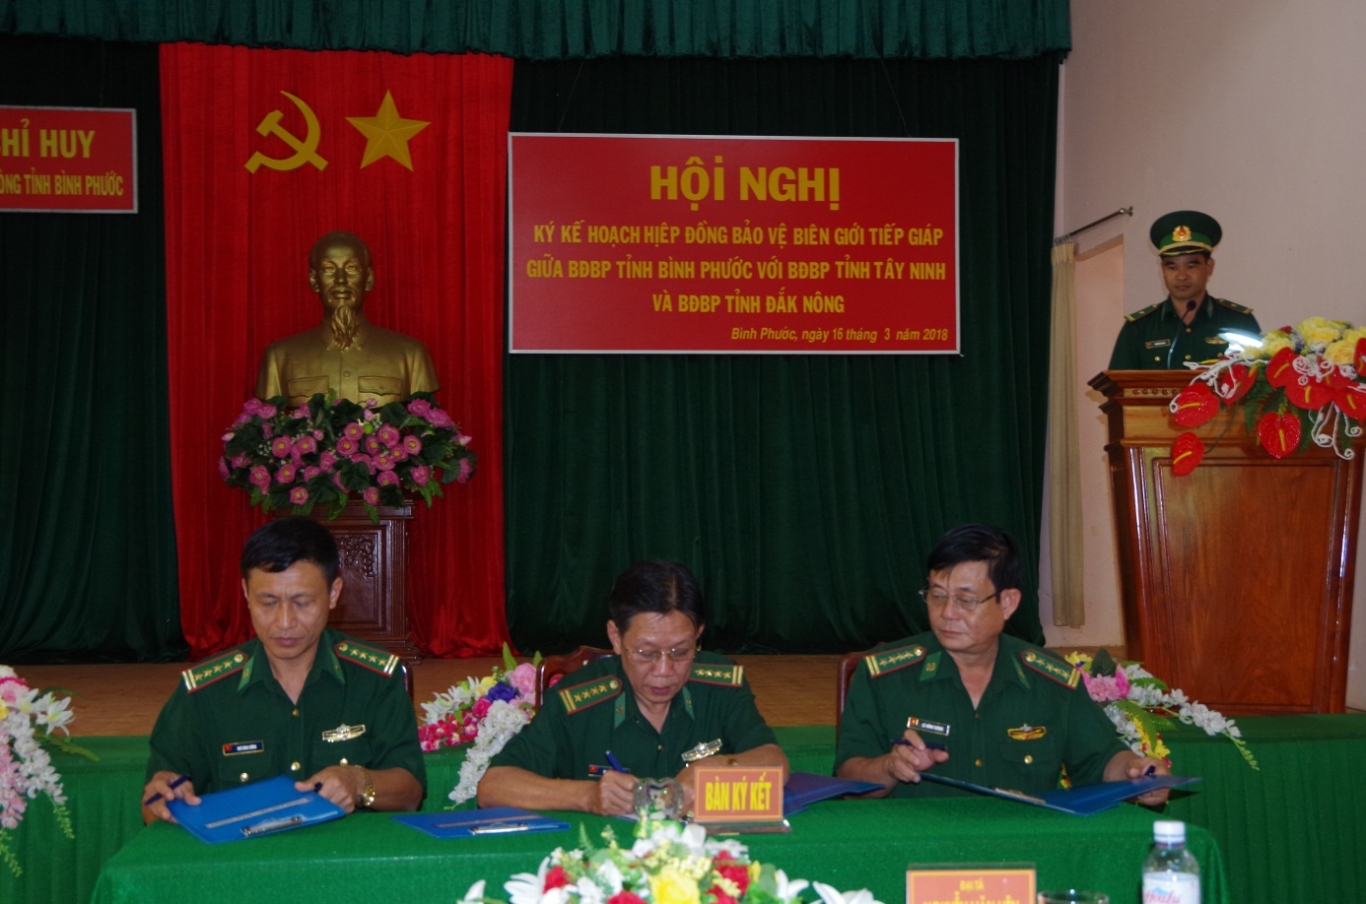 Lãnh đạo Bộ chỉ huy BĐBP 3 tỉnh Tây Ninh, Bình Phước, Đắk Nông ký kết hiệp đồng bảo vệ biên giới năm 2018